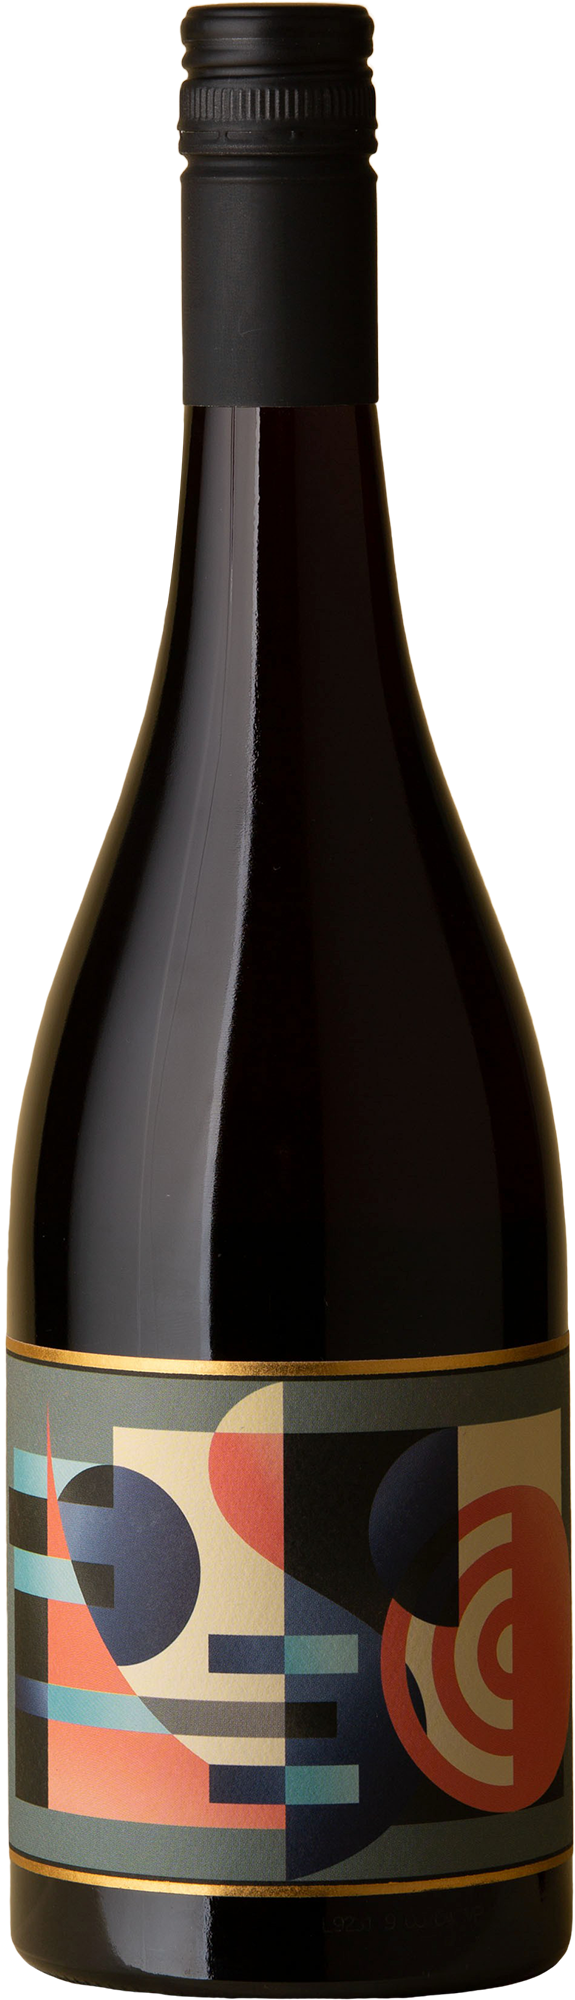 Longview - Fresco Nebbiolo / Pinot Noir 2021 Red Wine